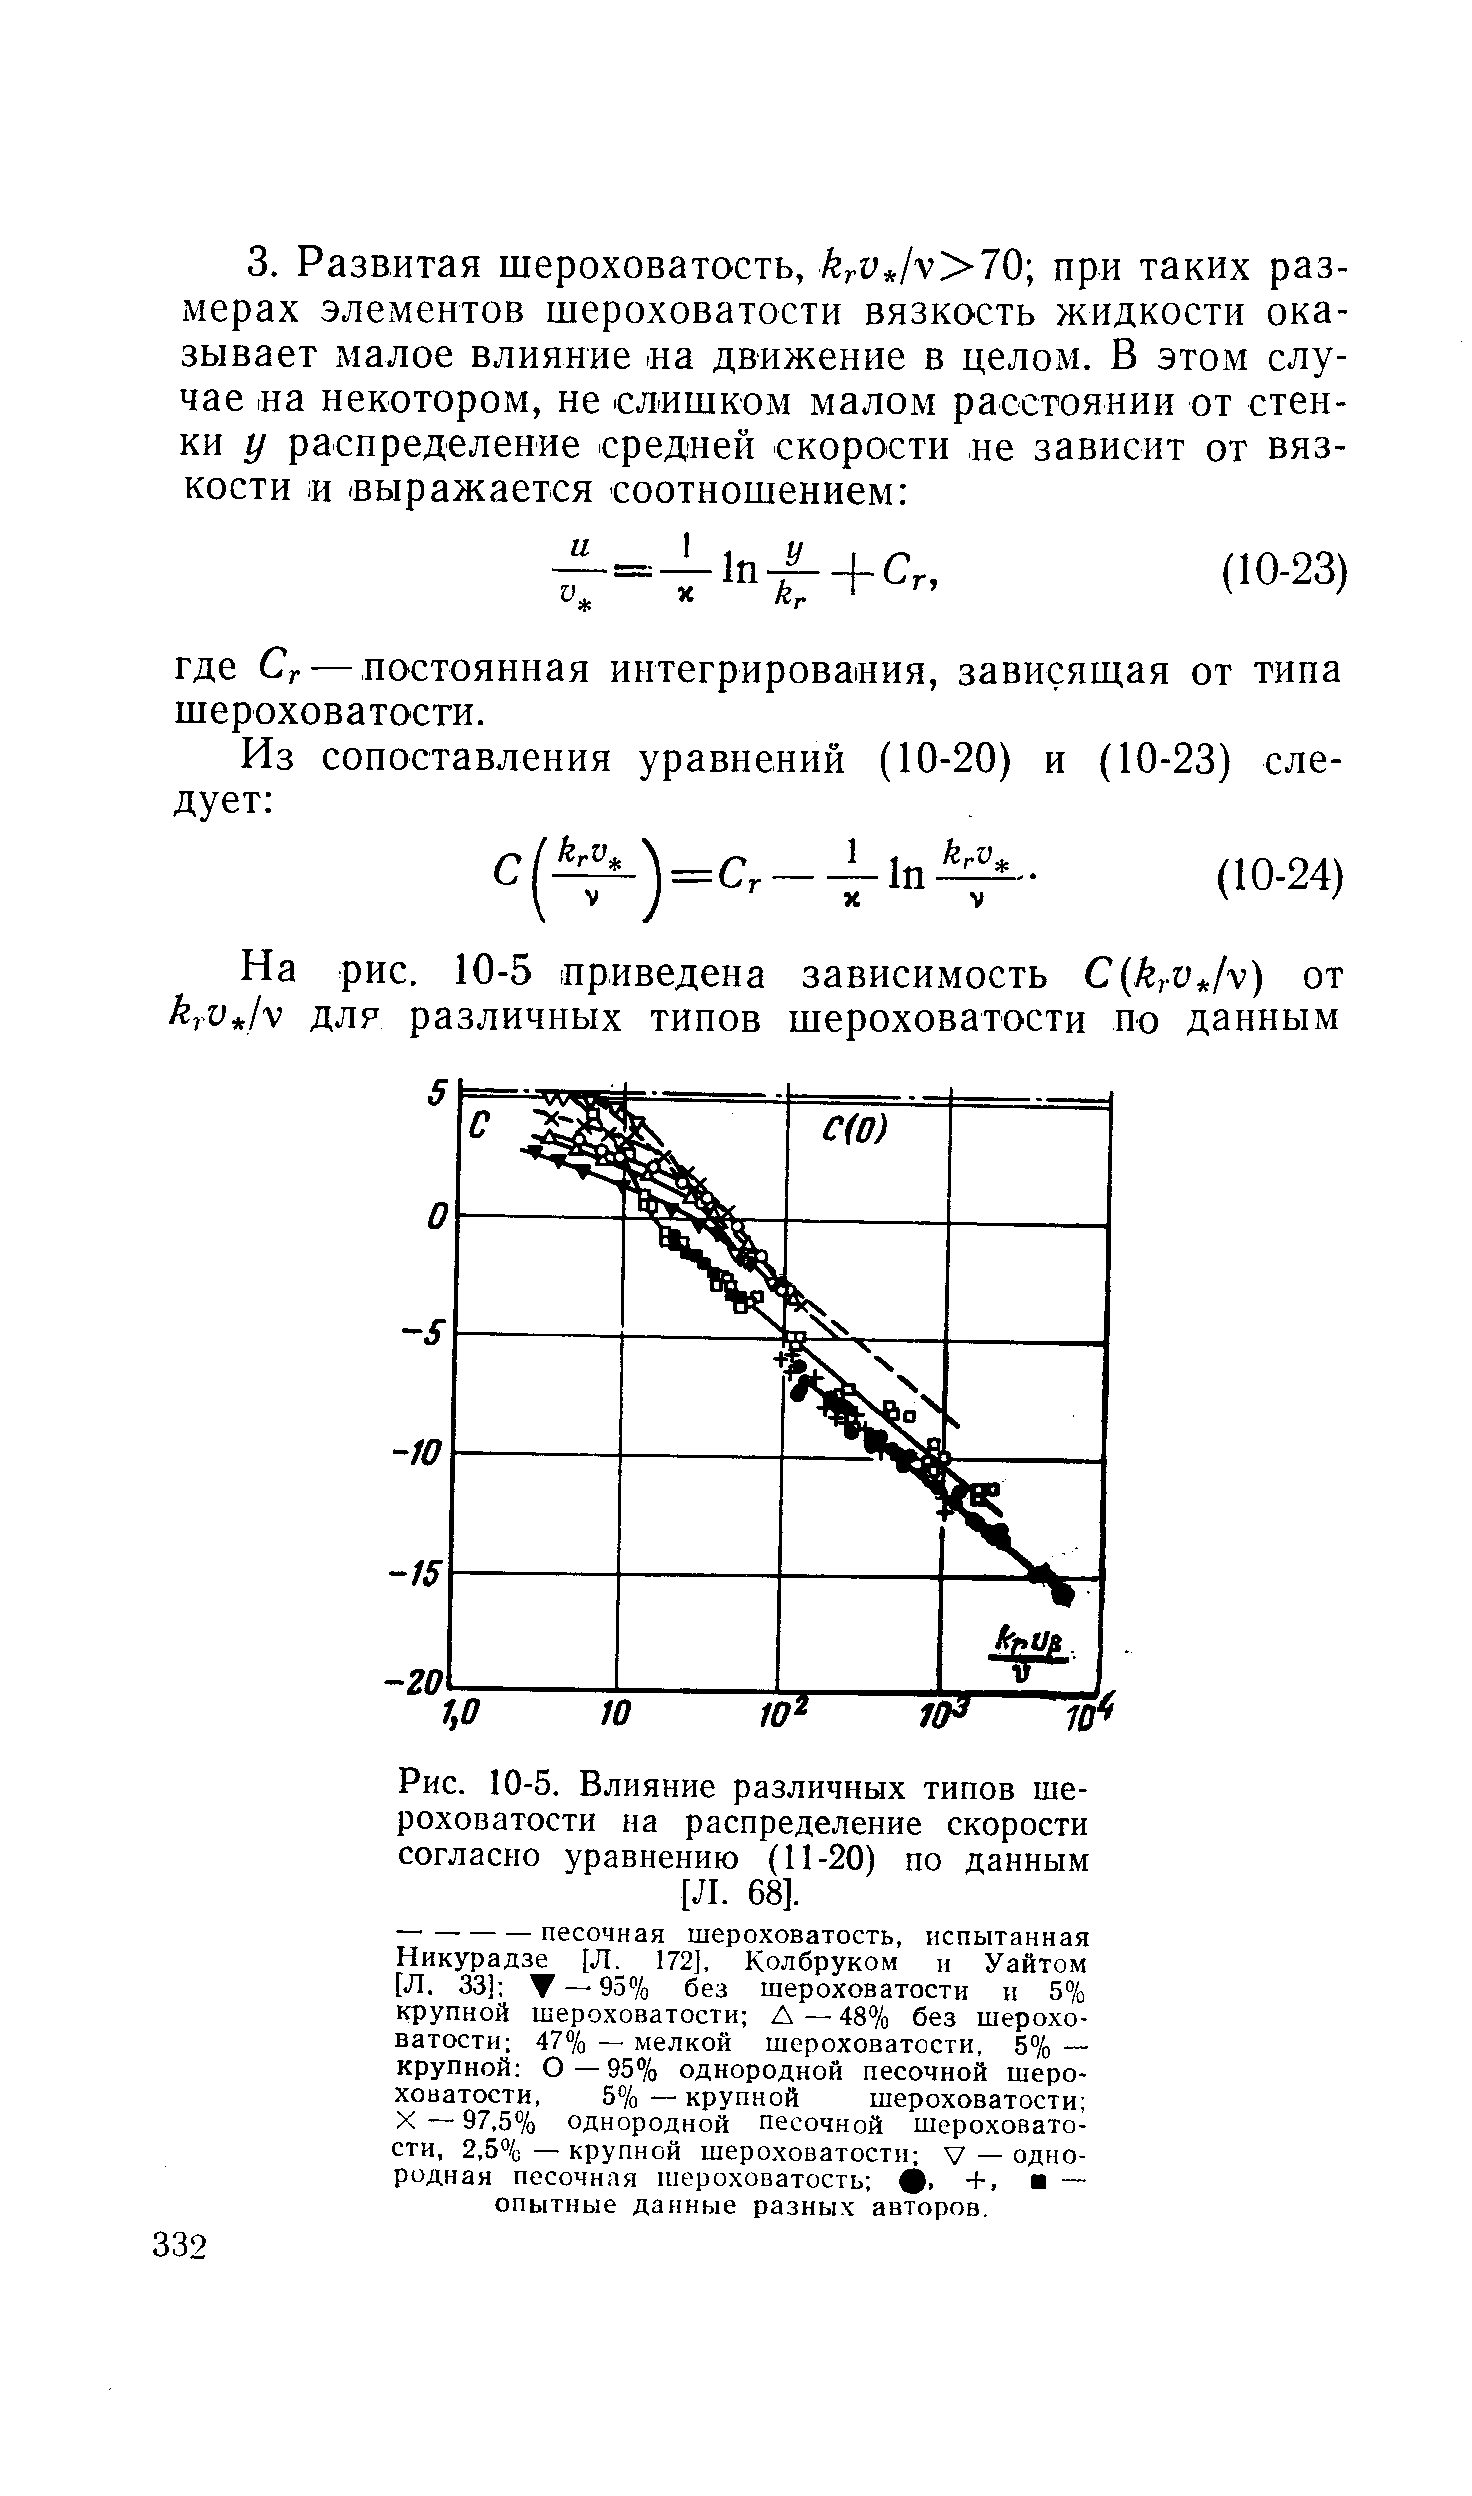 Рис. 10-5. Влияние различных типов шероховатости на <a href="/info/20718">распределение скорости</a> согласно уравнению (11-20) по данным [Л. 68].
